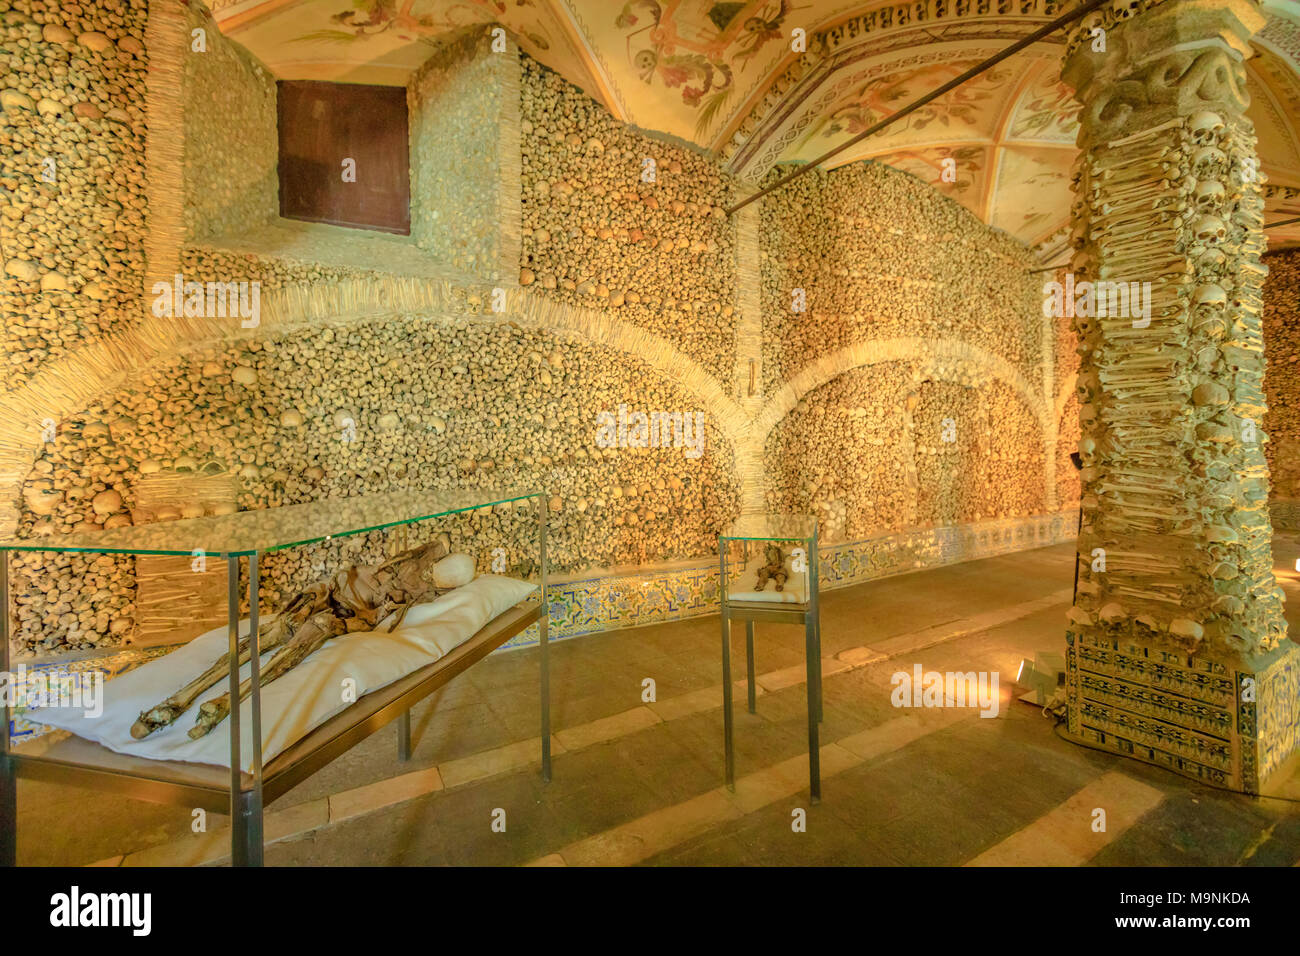 Evora, Portugal - 18. August 2017: getrocknete Leichnam in der Kapelle der Knochen oder Capela dos Ossos, einer der am meisten besuchten Sehenswürdigkeiten von Evora. Wände und Säulen mit menschlichen Knochen und Schädeln geschmückt. Stockfoto